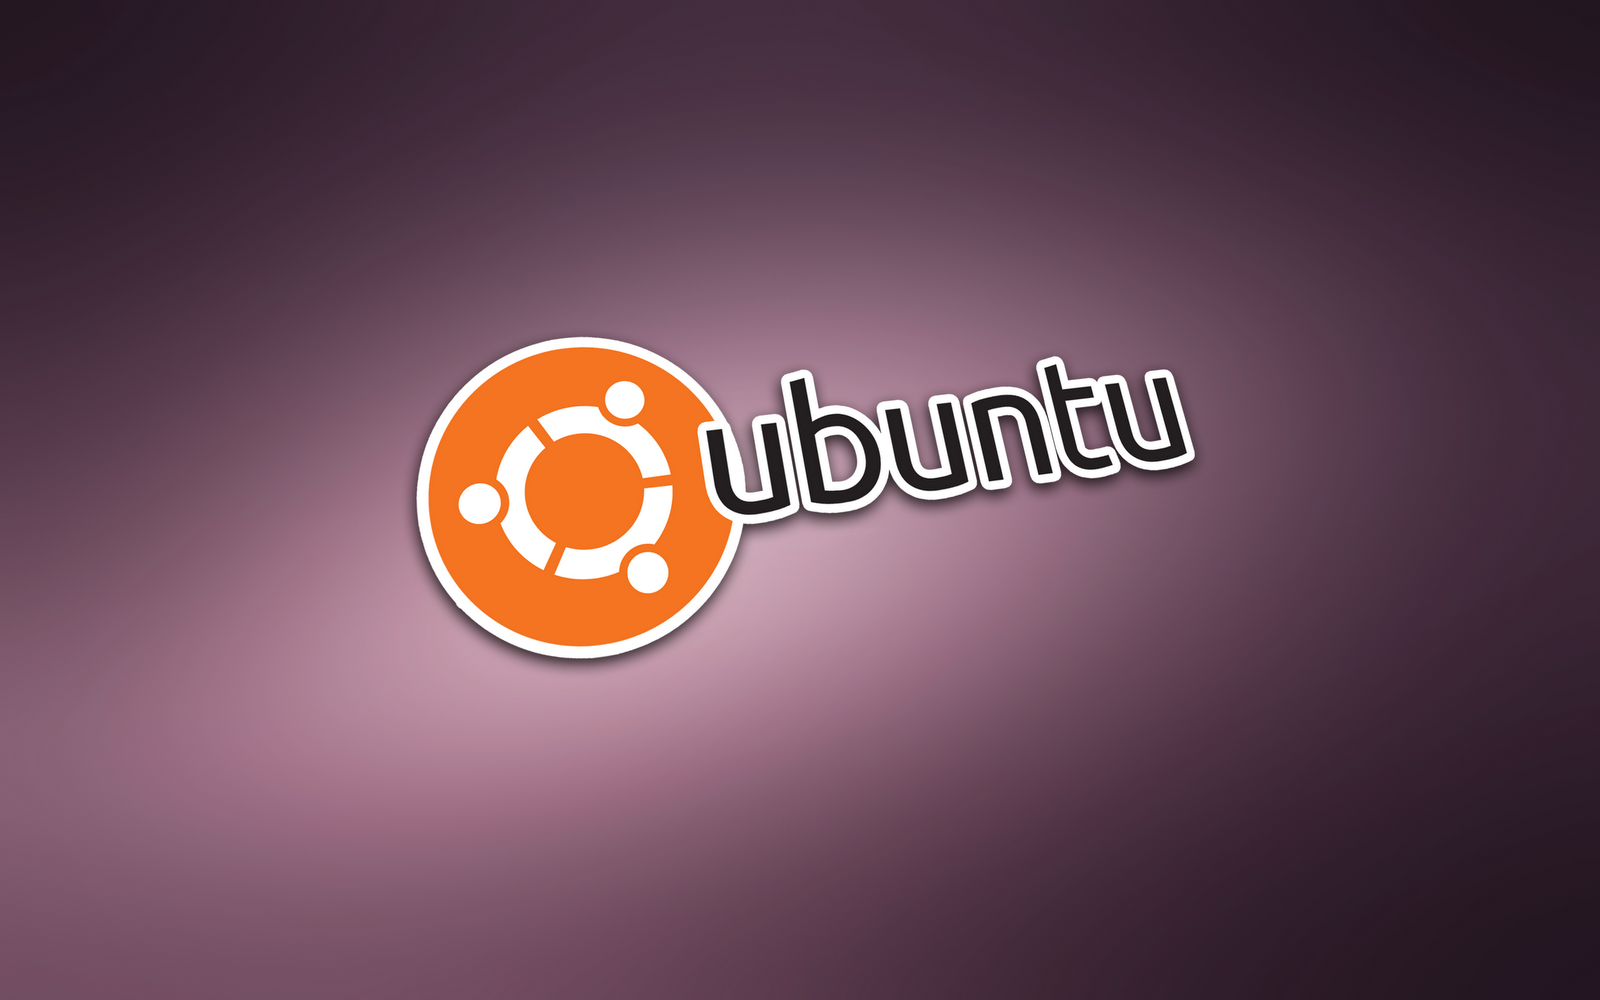 Ubuntu Wallpaper 10.10 | iheartubuntu